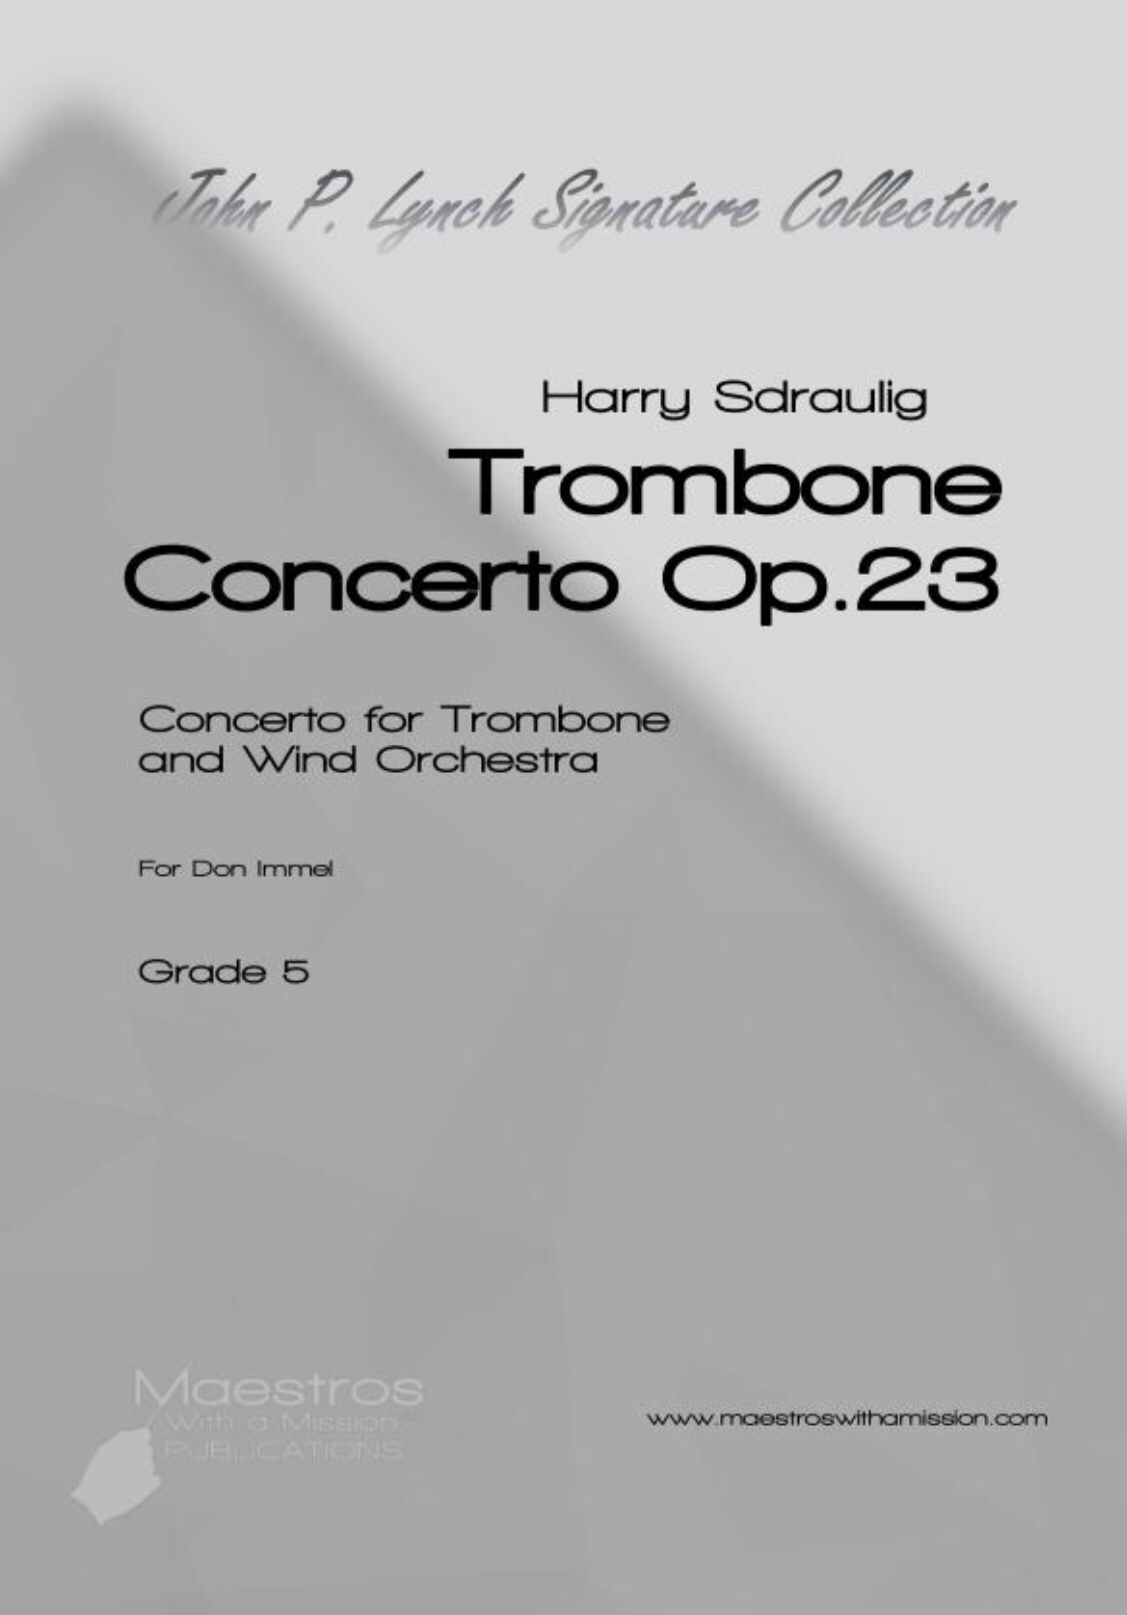 Trombone Concerto, Op. 23 by Harry Sdraulig